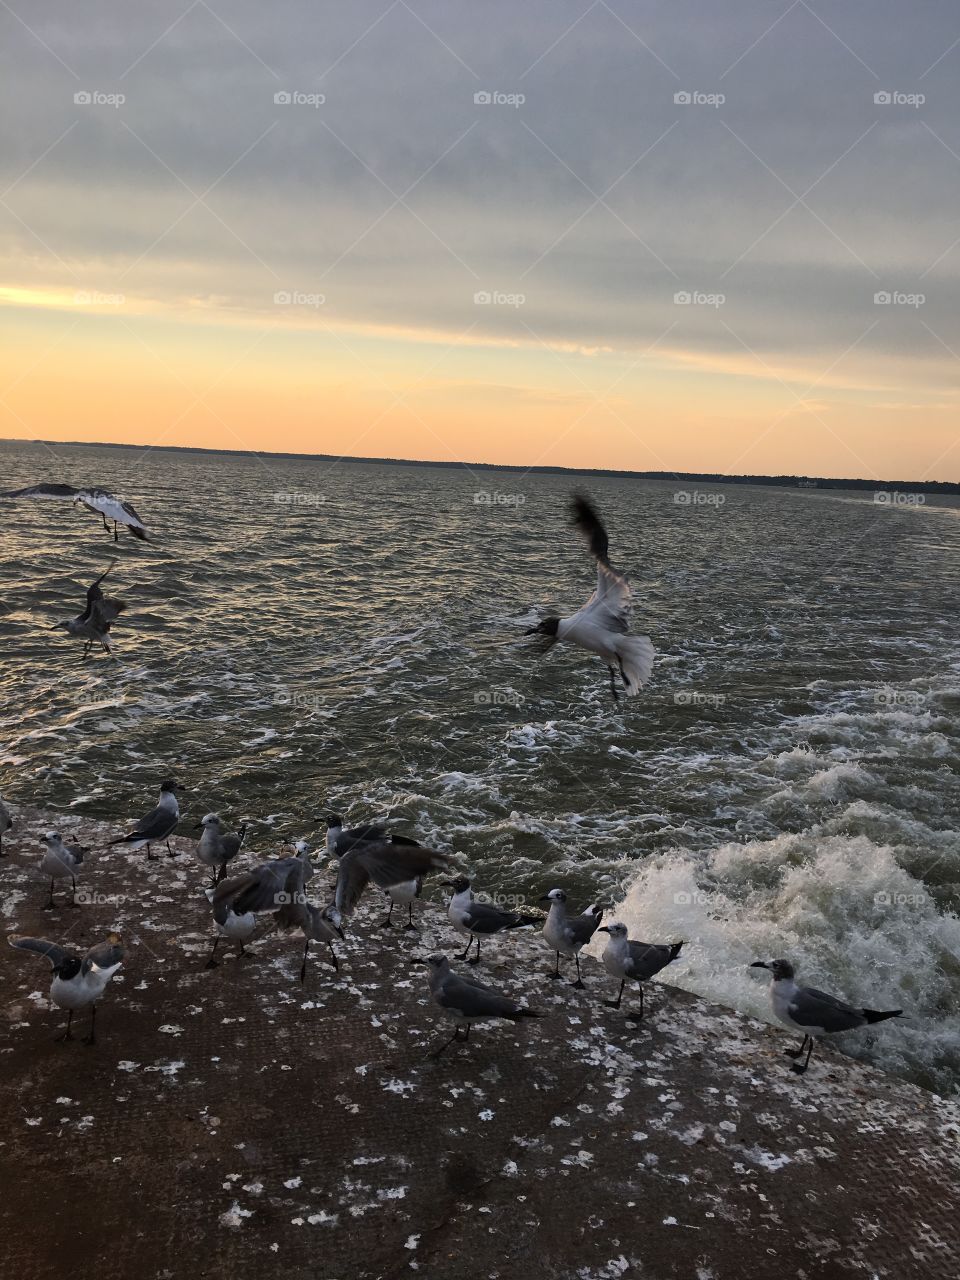 Birds at water 